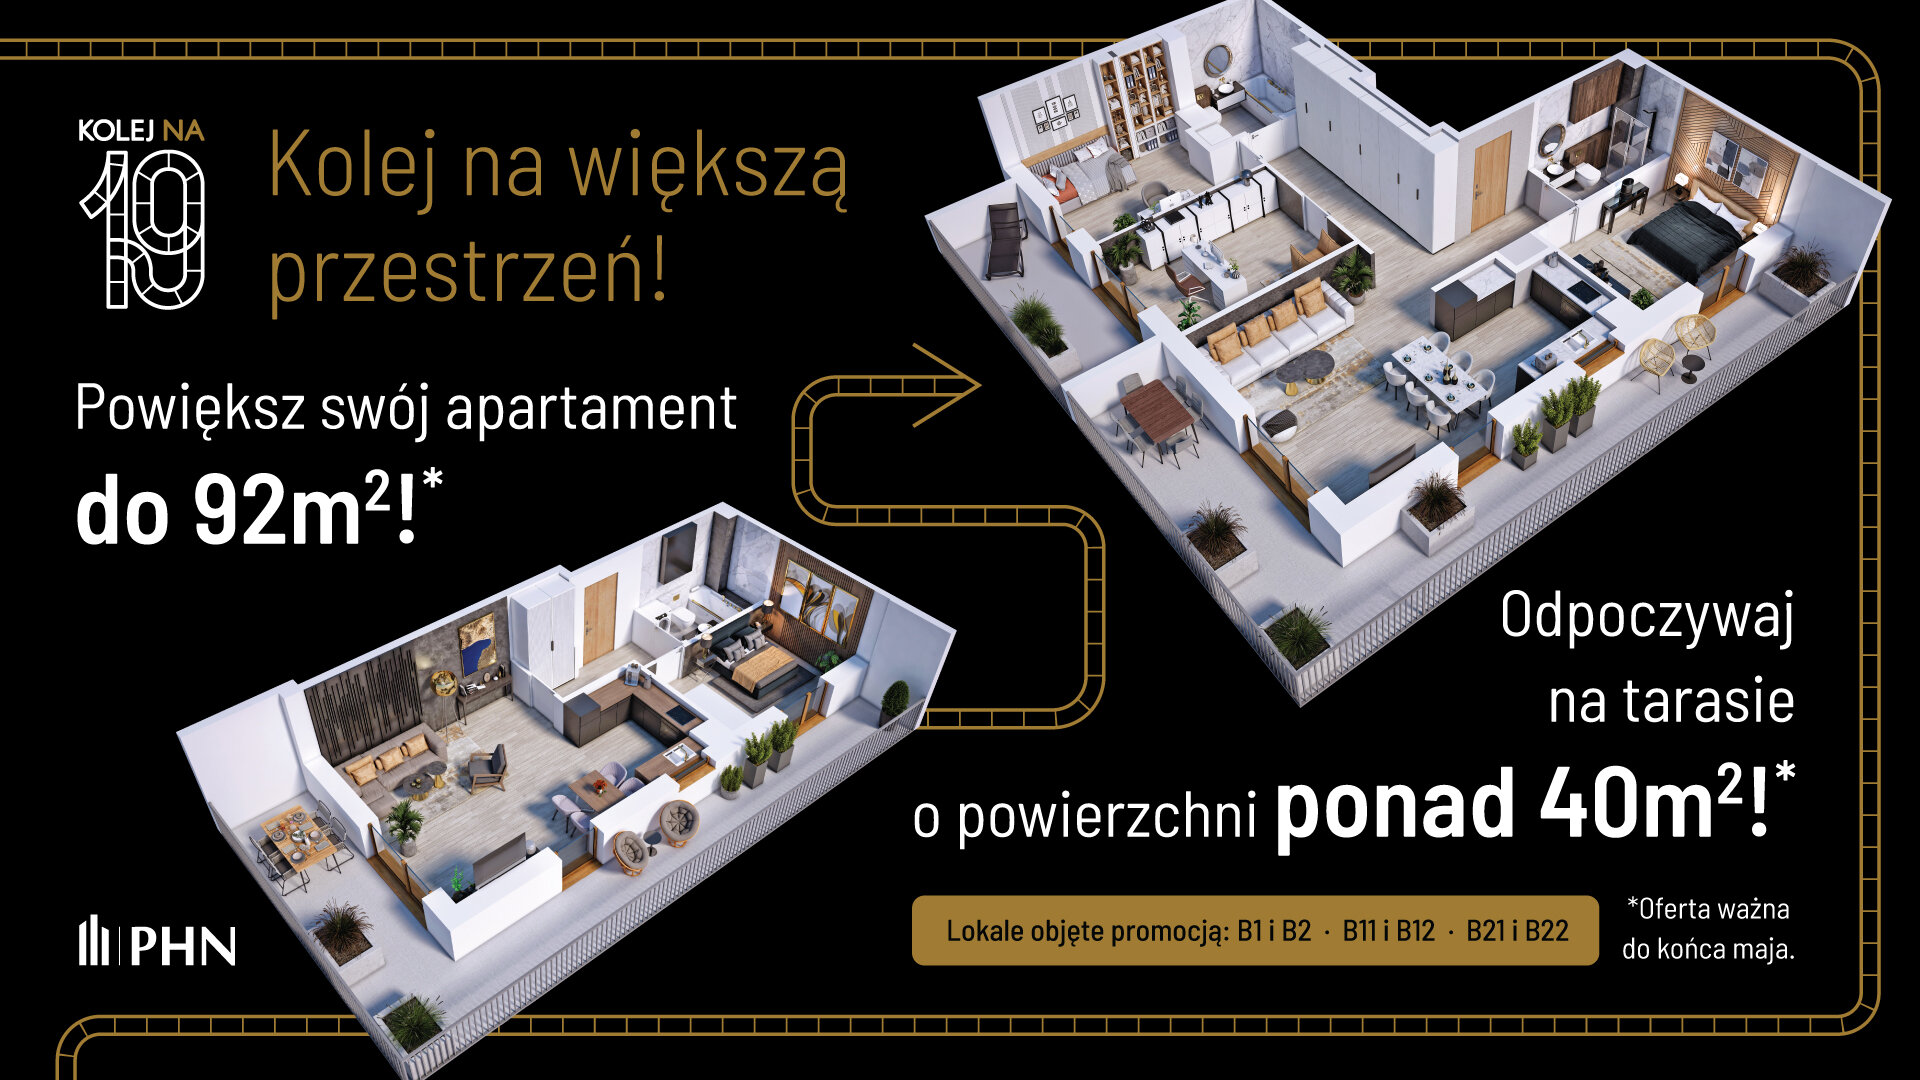 Wiosenna promocja w KOLEJ NA 19 - Apartament, 2 pokoje, Warszawa,51.65 m²,1 036 719 zł